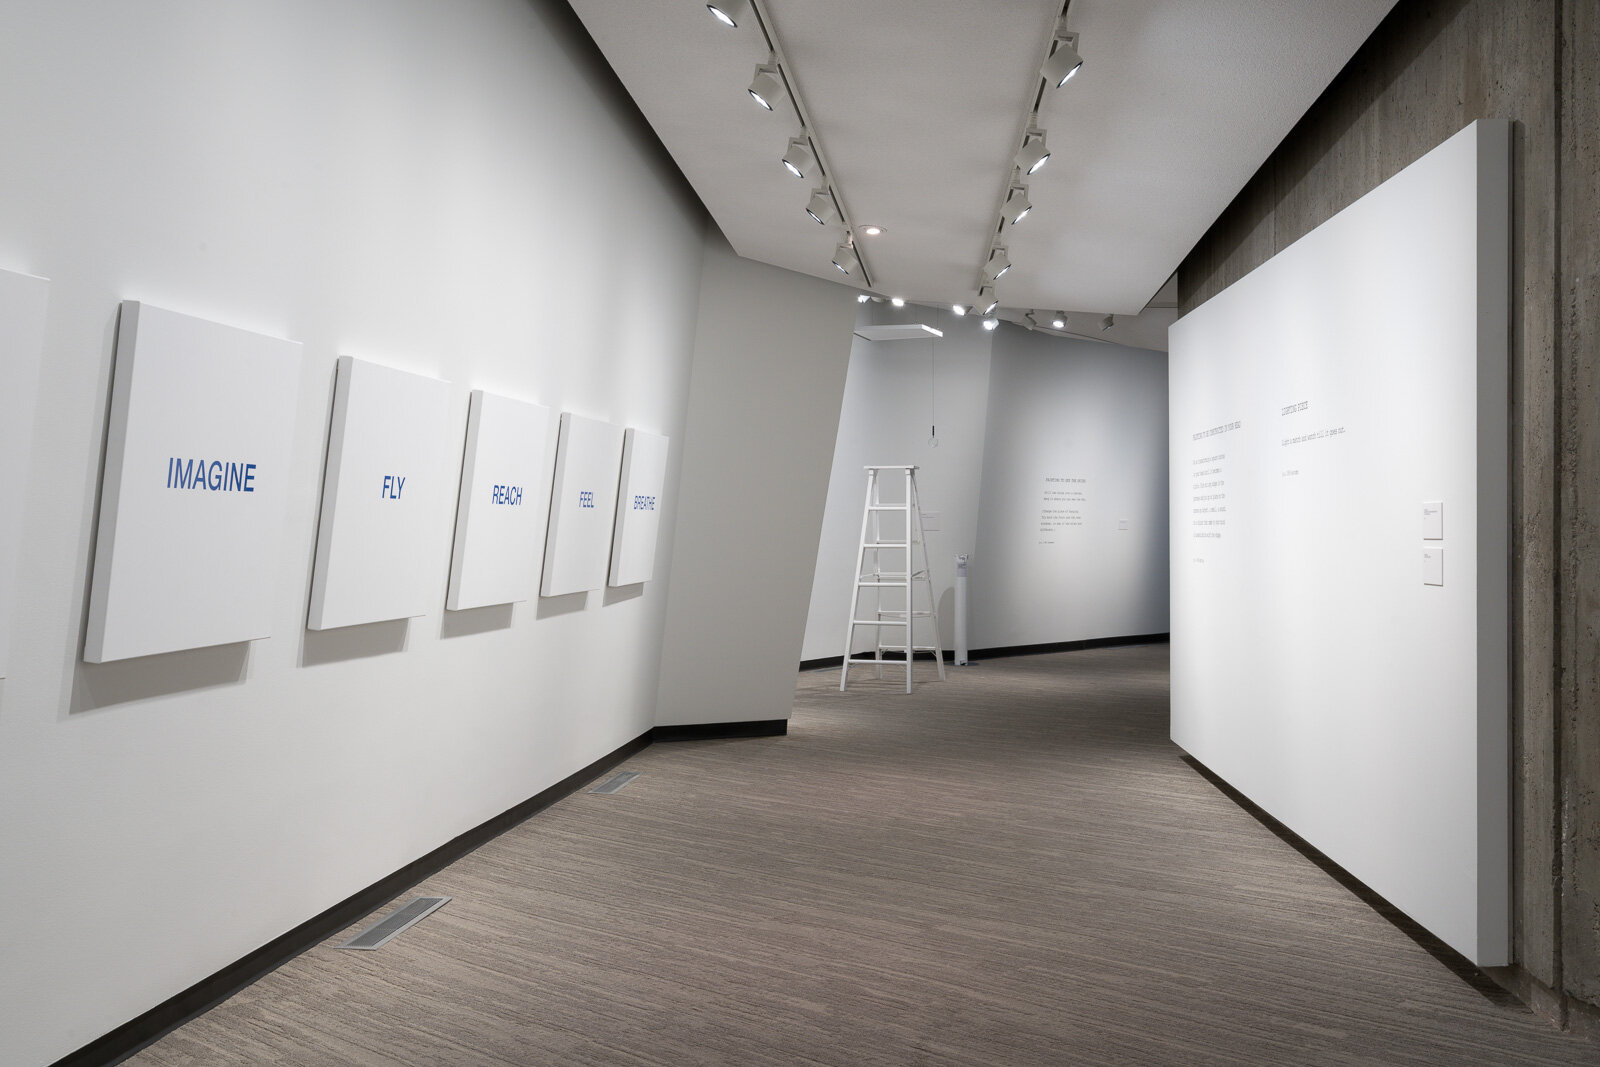 Vancouver Art Gallery- Yoko Ono: Growing Freedom